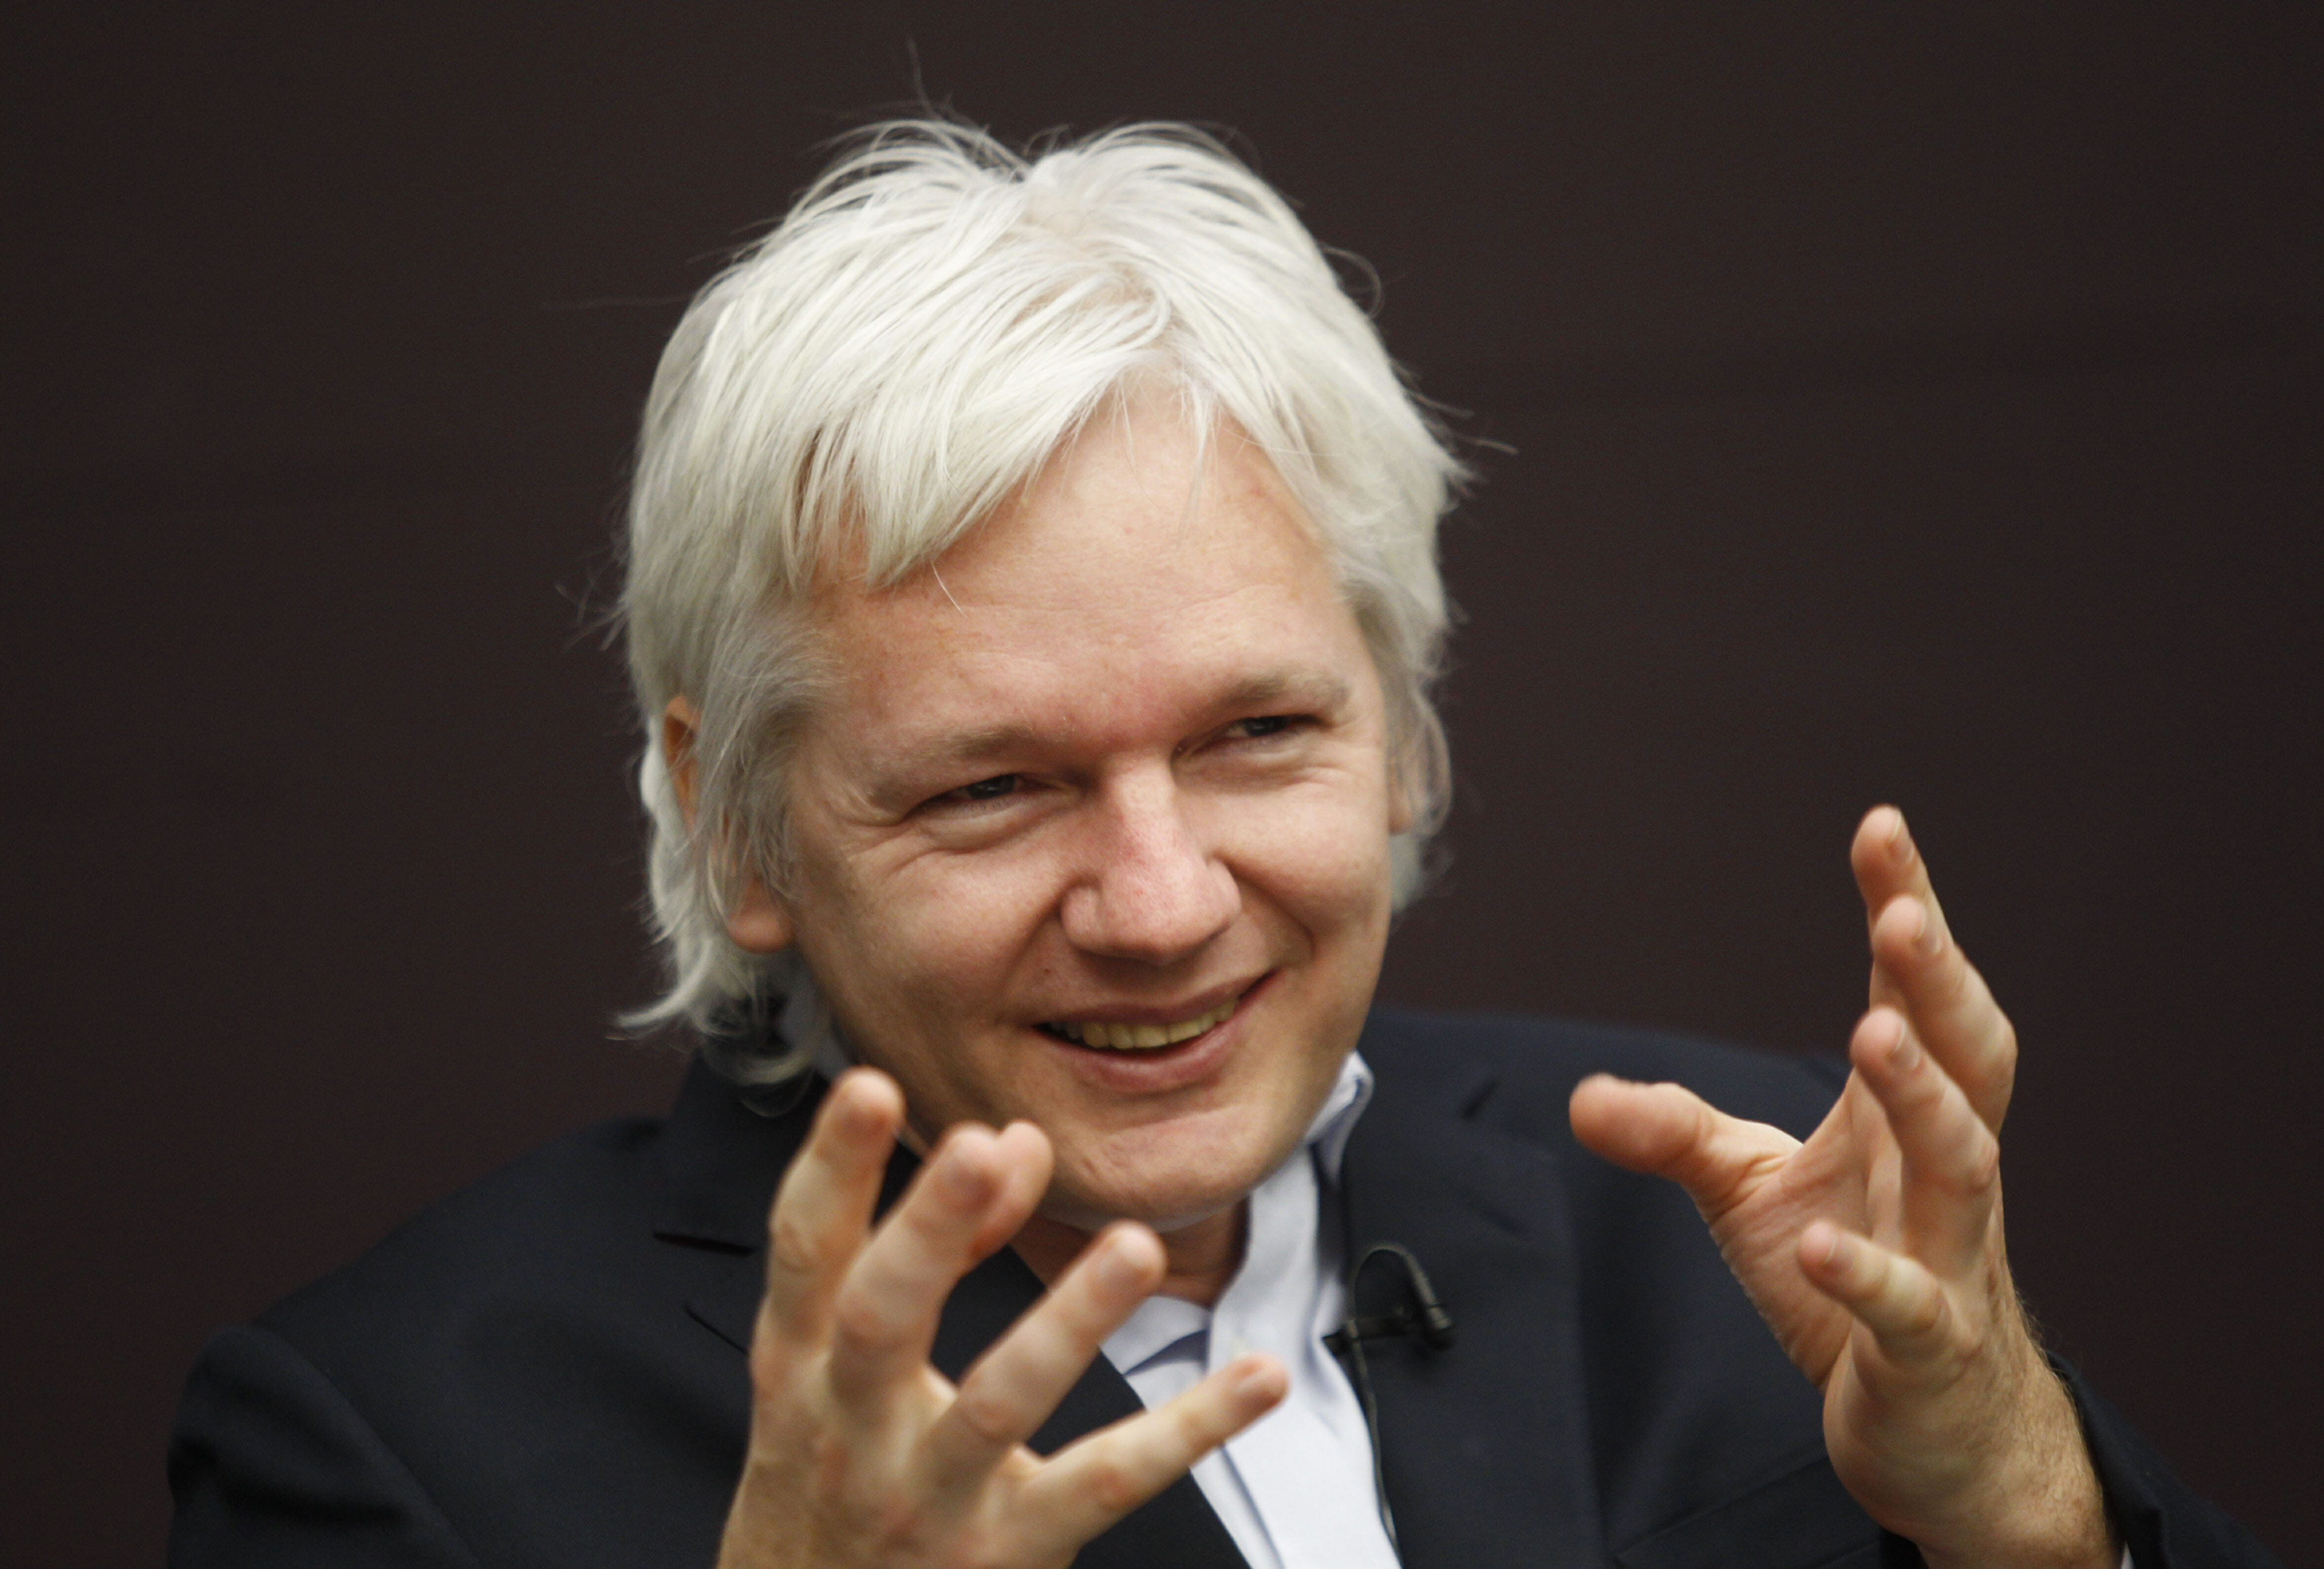 Викиликс что это. Джулиан Ассанж. Джулиан Ассанж Wikileaks. Джулиан Ассанж фото. Основатель Викиликс Джулиан Ассанж.